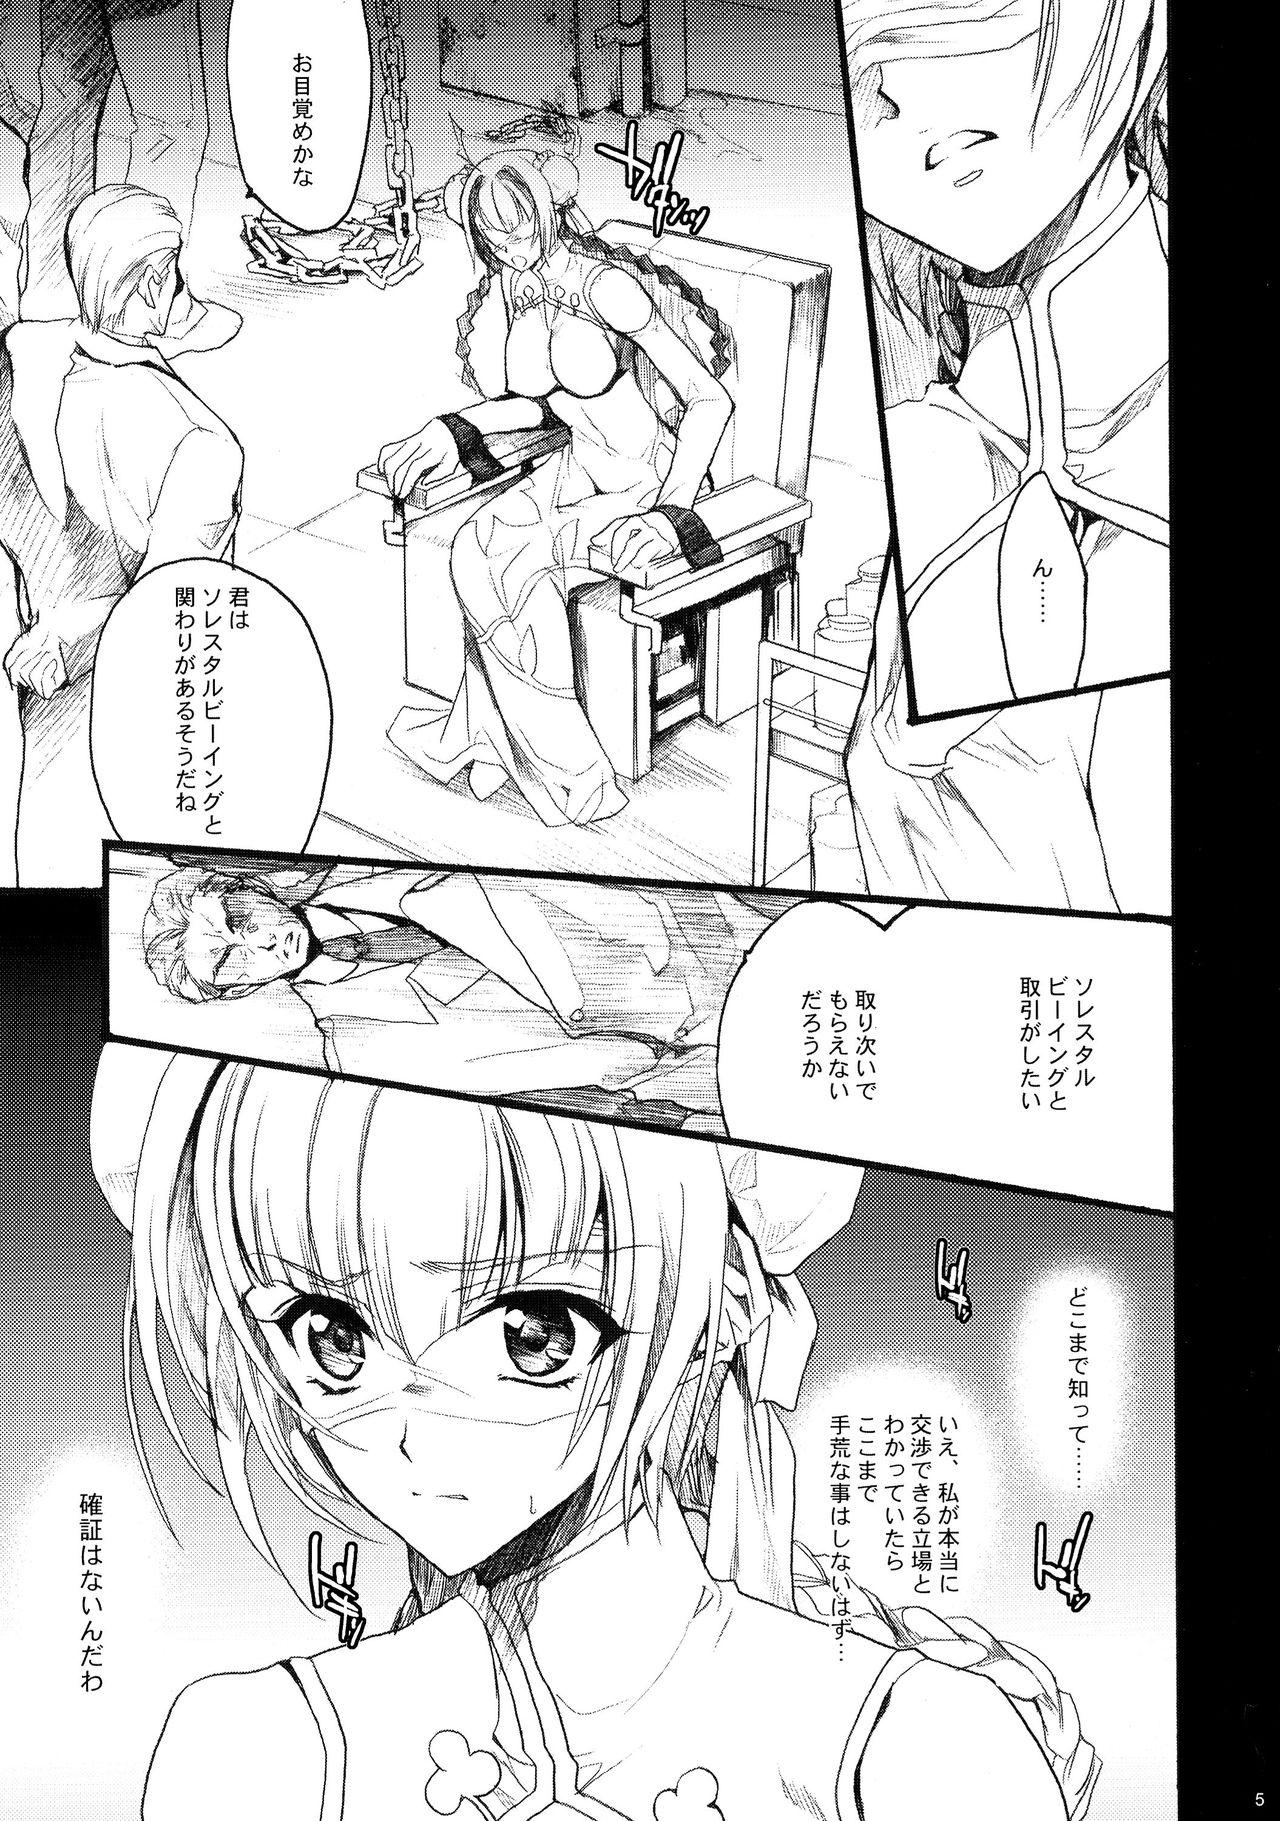 Porno Sono Mune o Yoshi to suru!! - Gundam 00 Salope - Page 5